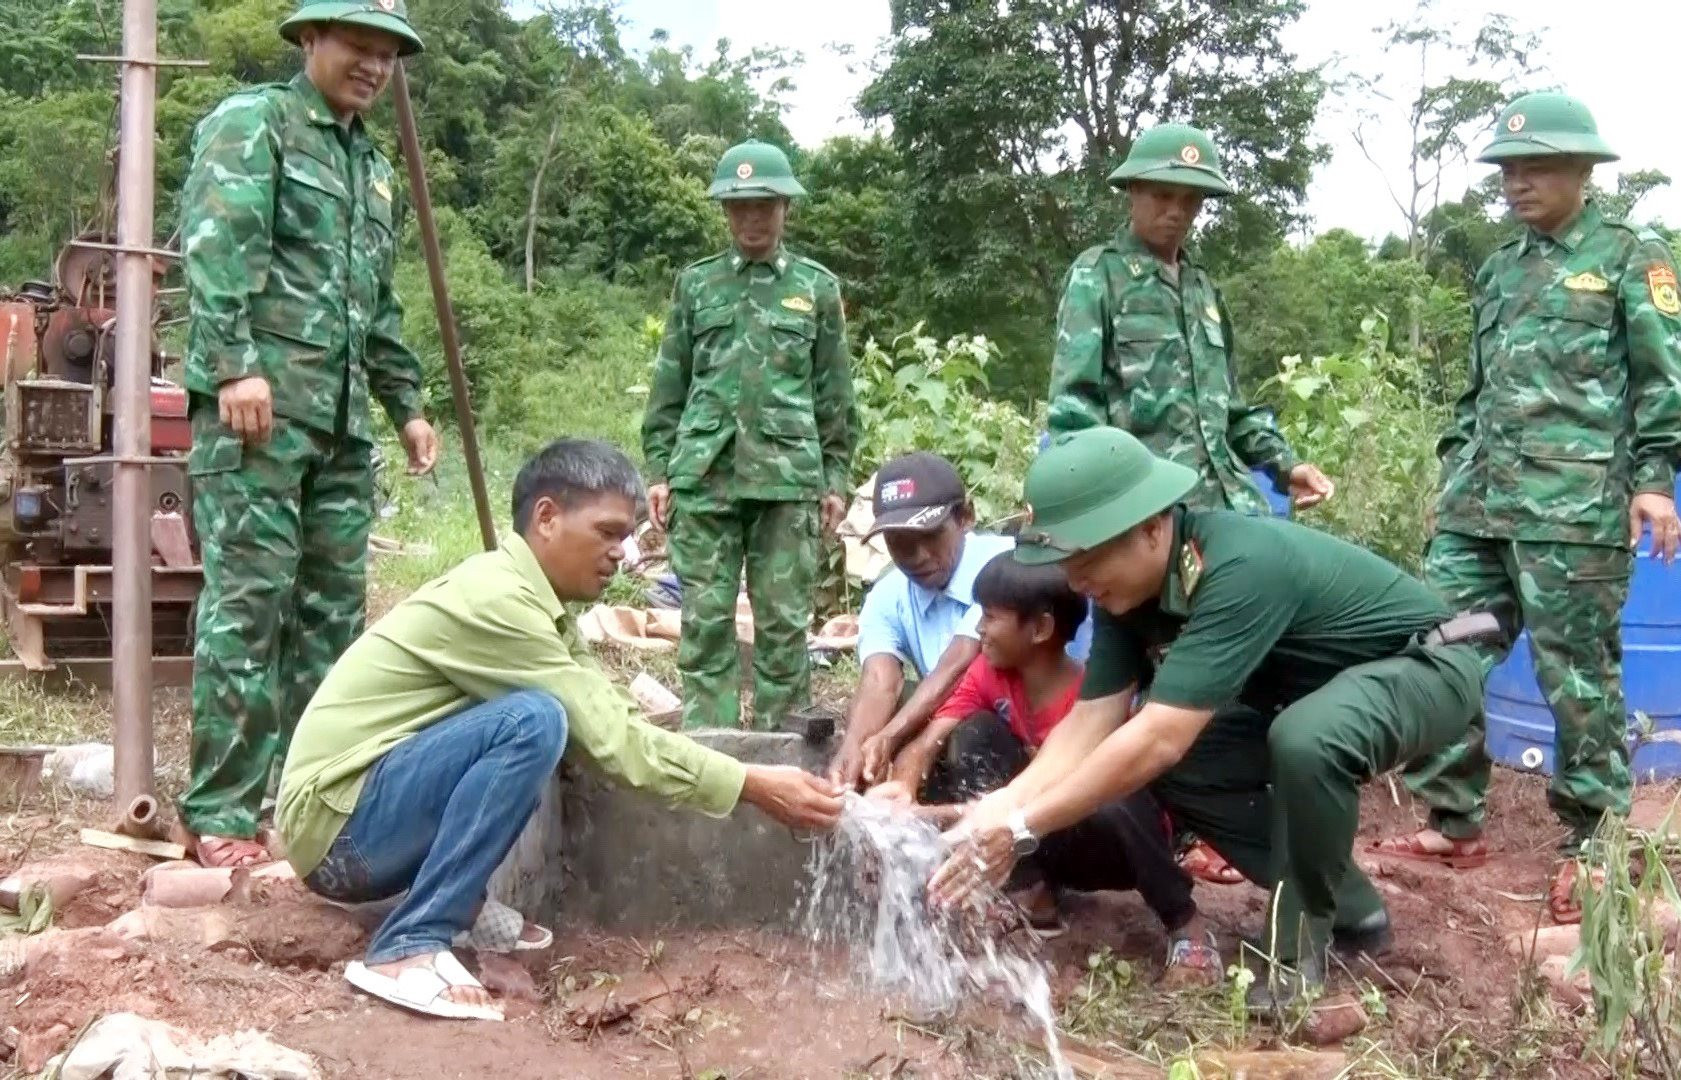 Quảng Bình: Không để bà con miền núi thiếu nước sinh hoạt